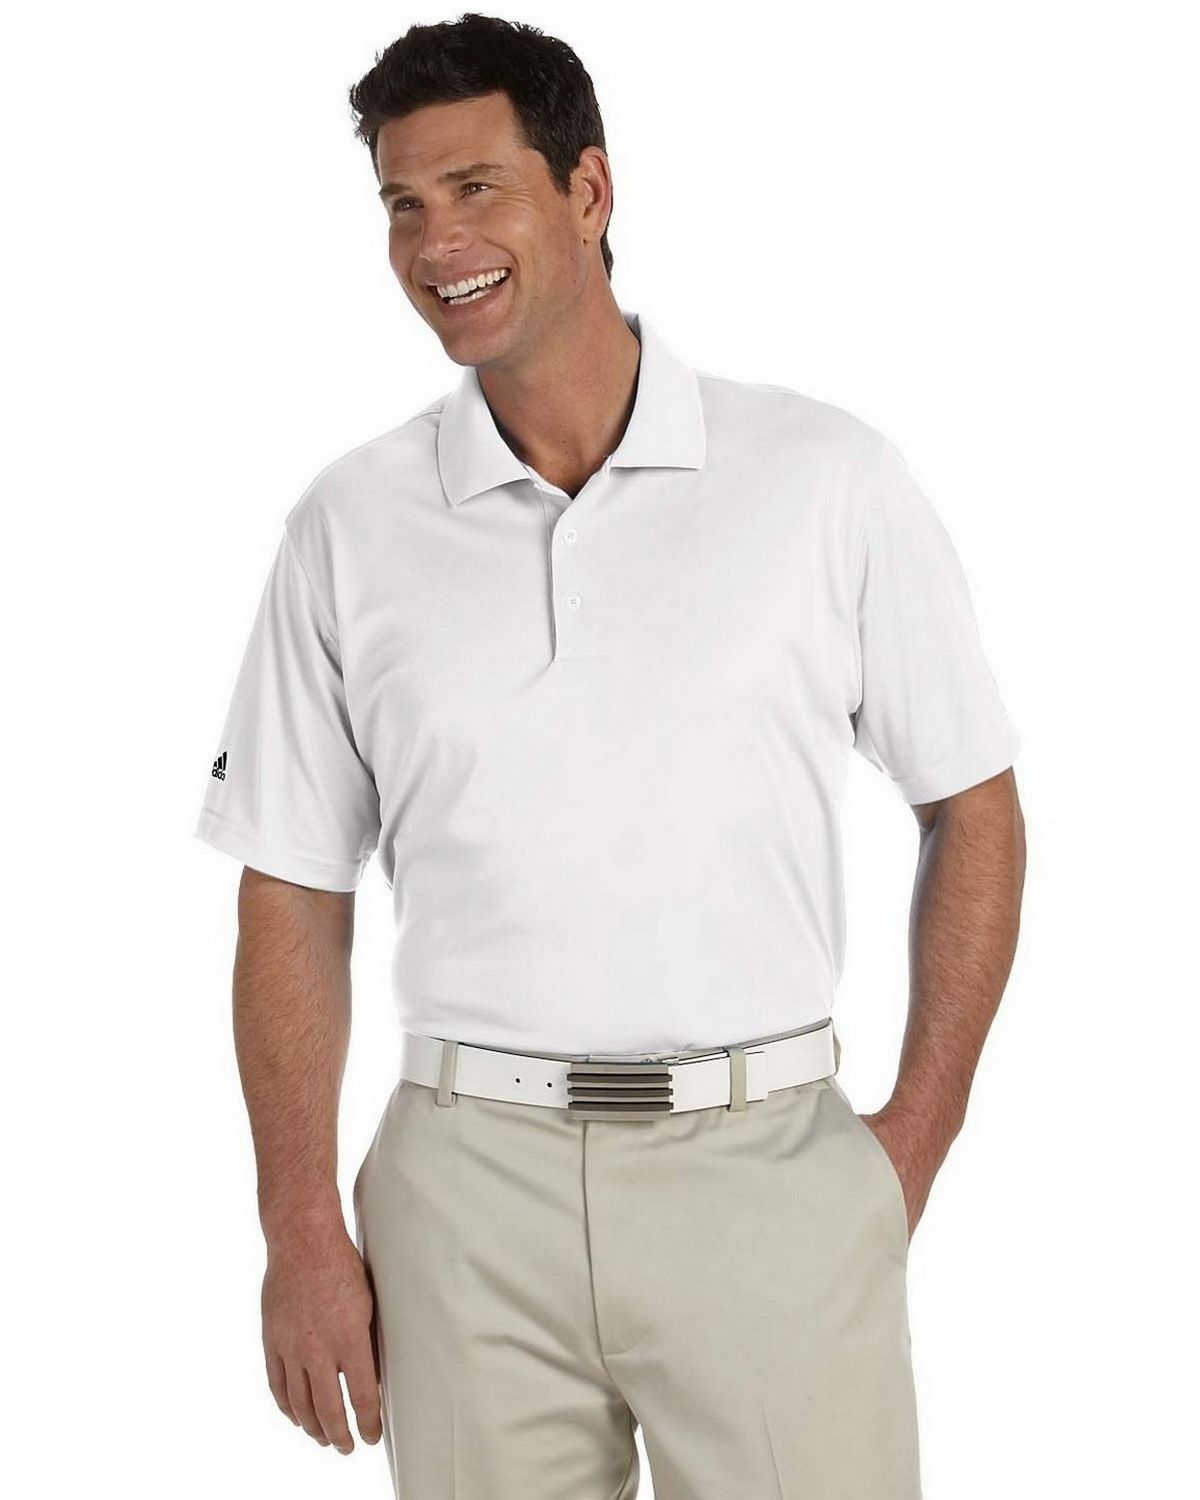 Adidas Golf A130 Men's ClimaLite Pique Short-Sleeve Polo